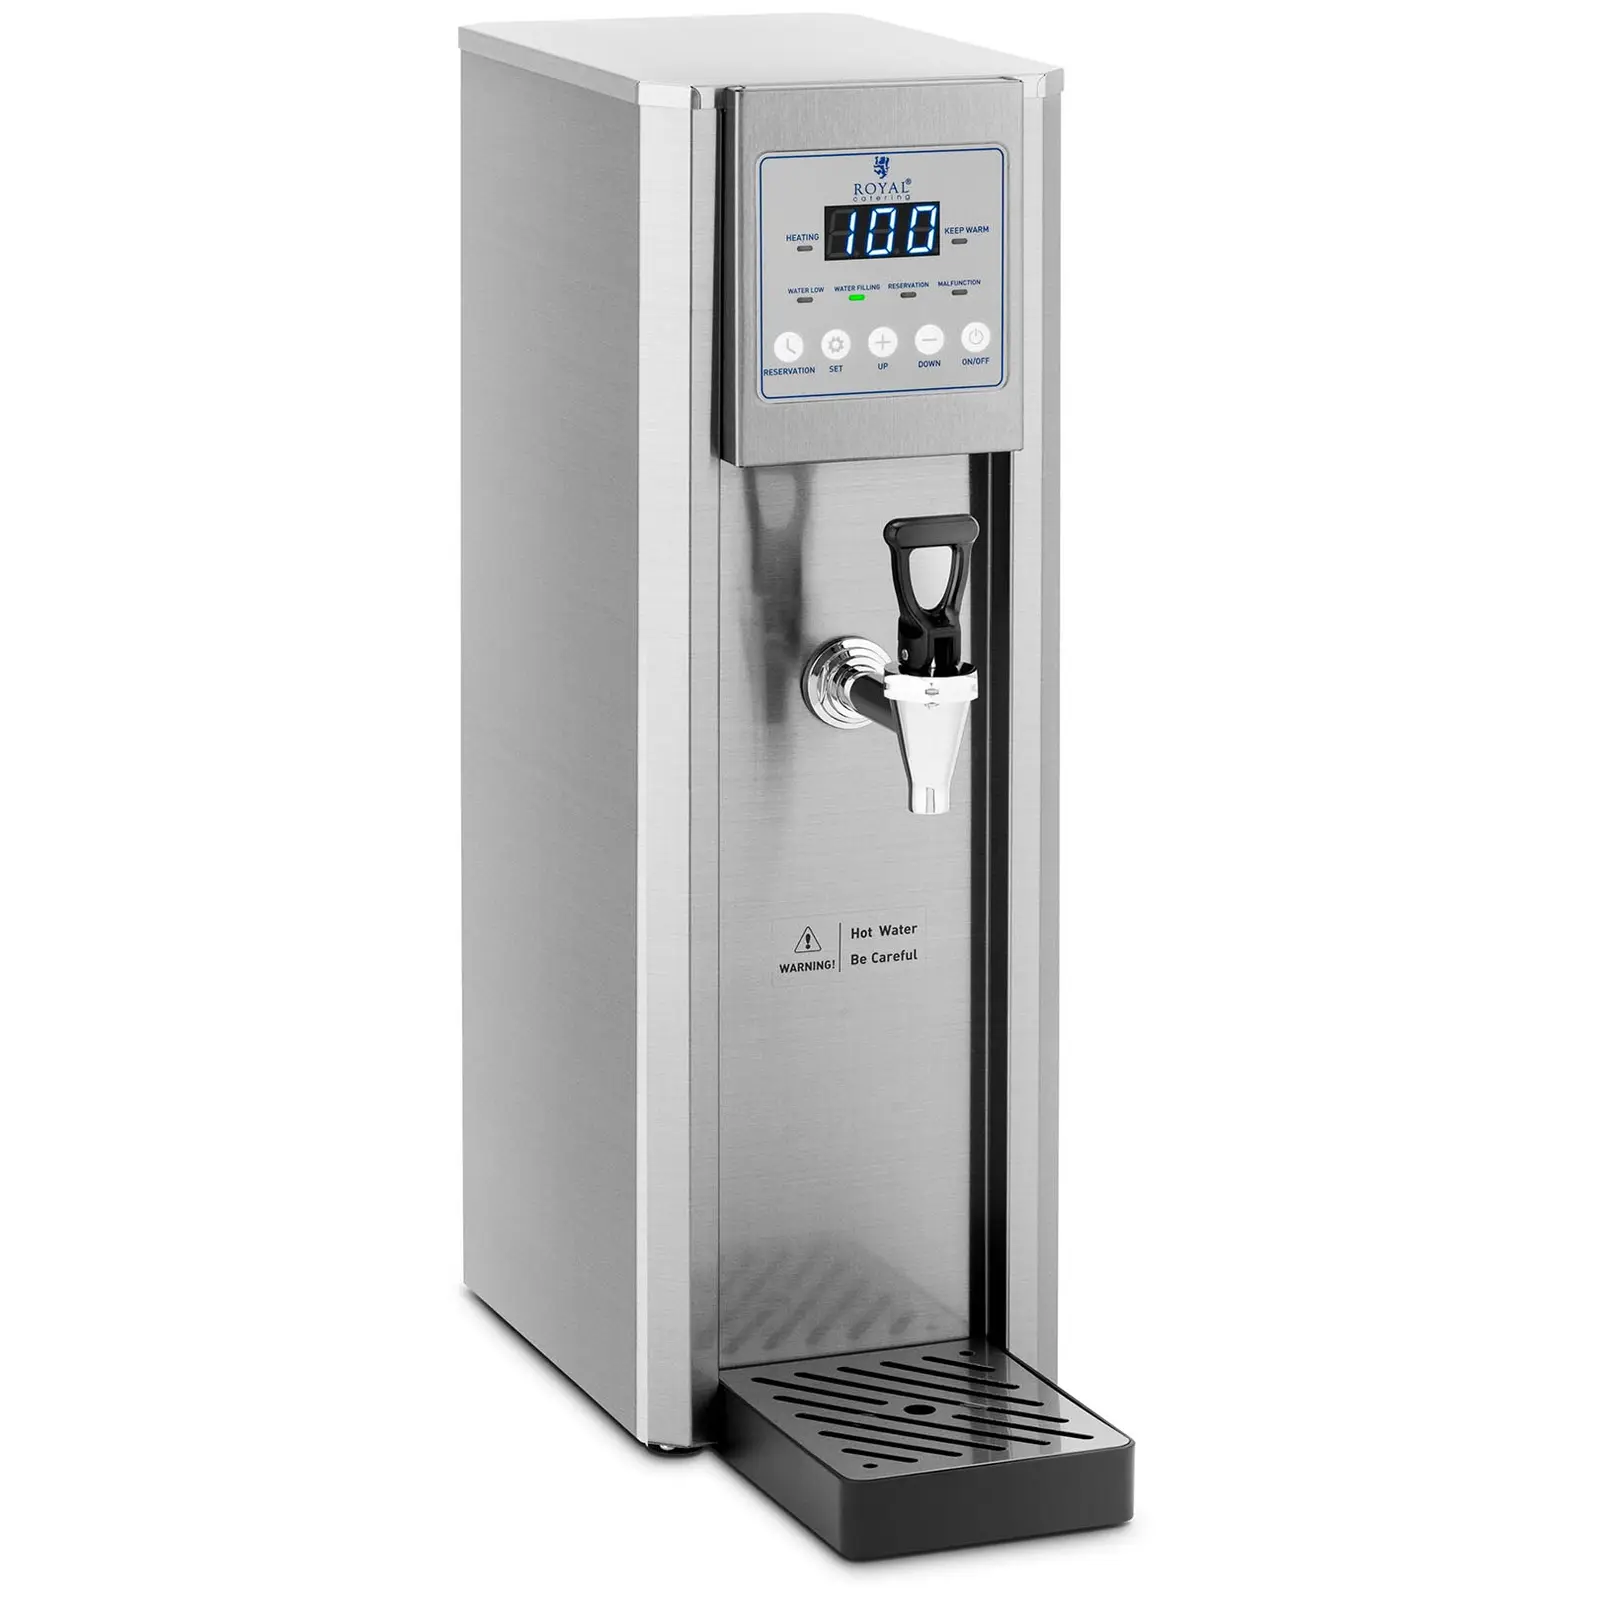 Distributeur d'eau chaude - 8 L - 2100 W - Raccord d'eau - Royal Catering